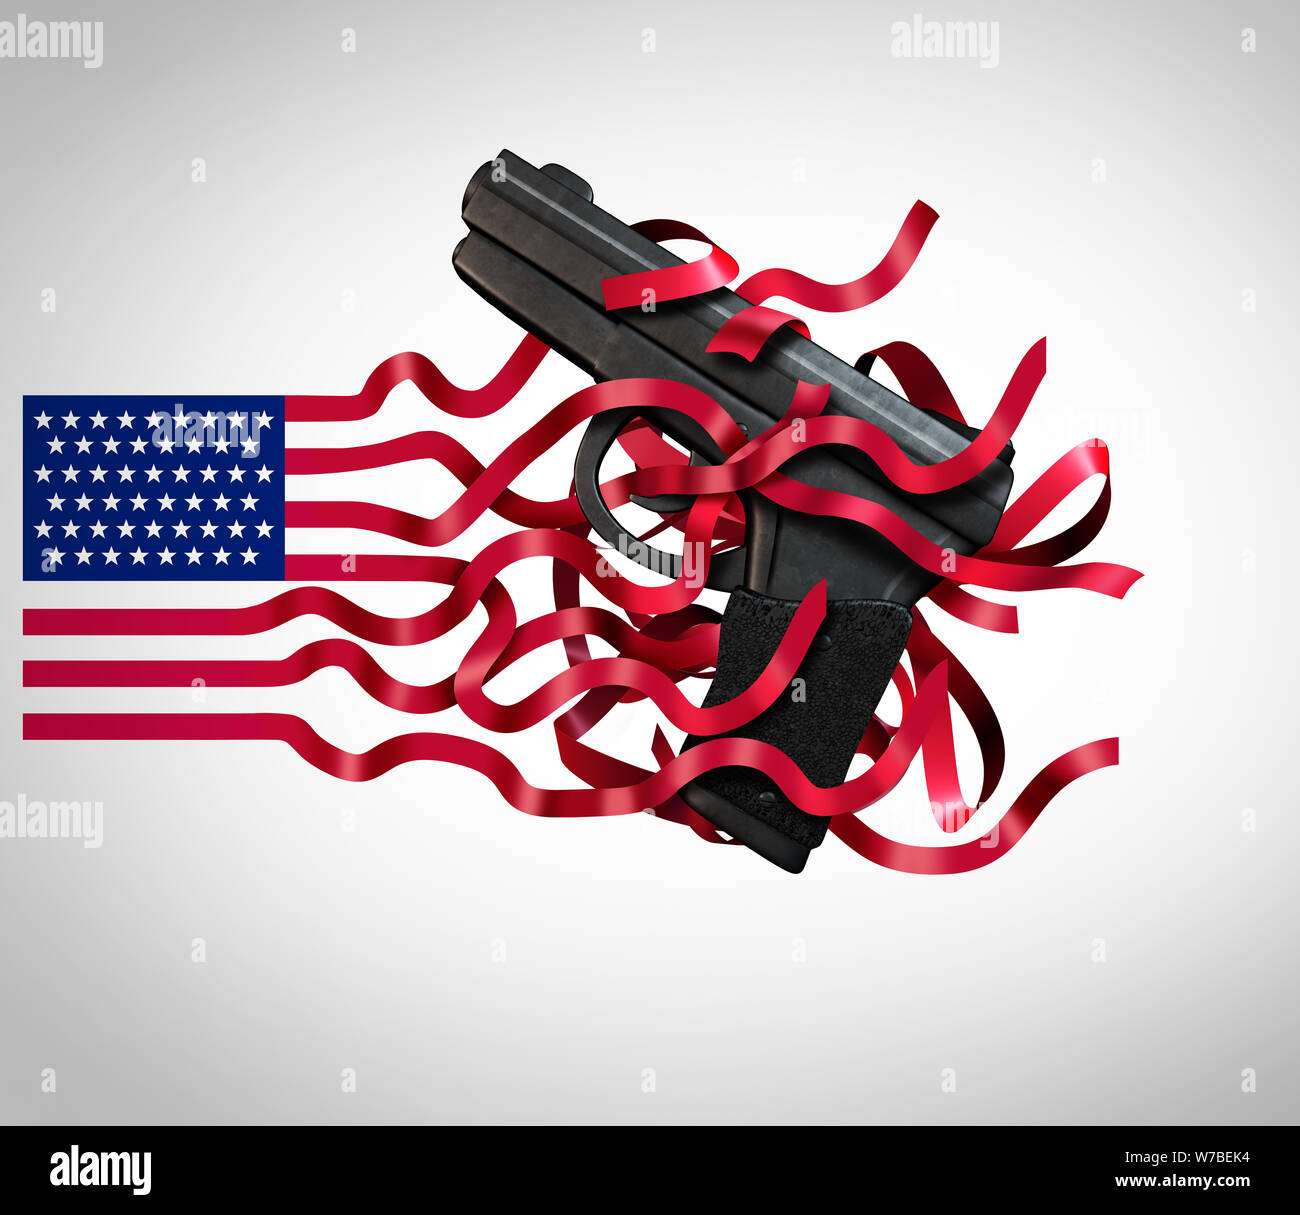 Pistole in USA e della violenza pistola negli Stati Uniti e il secondo emendamento della costituzione americana come armi da fuoco politico problema sociale. Foto Stock